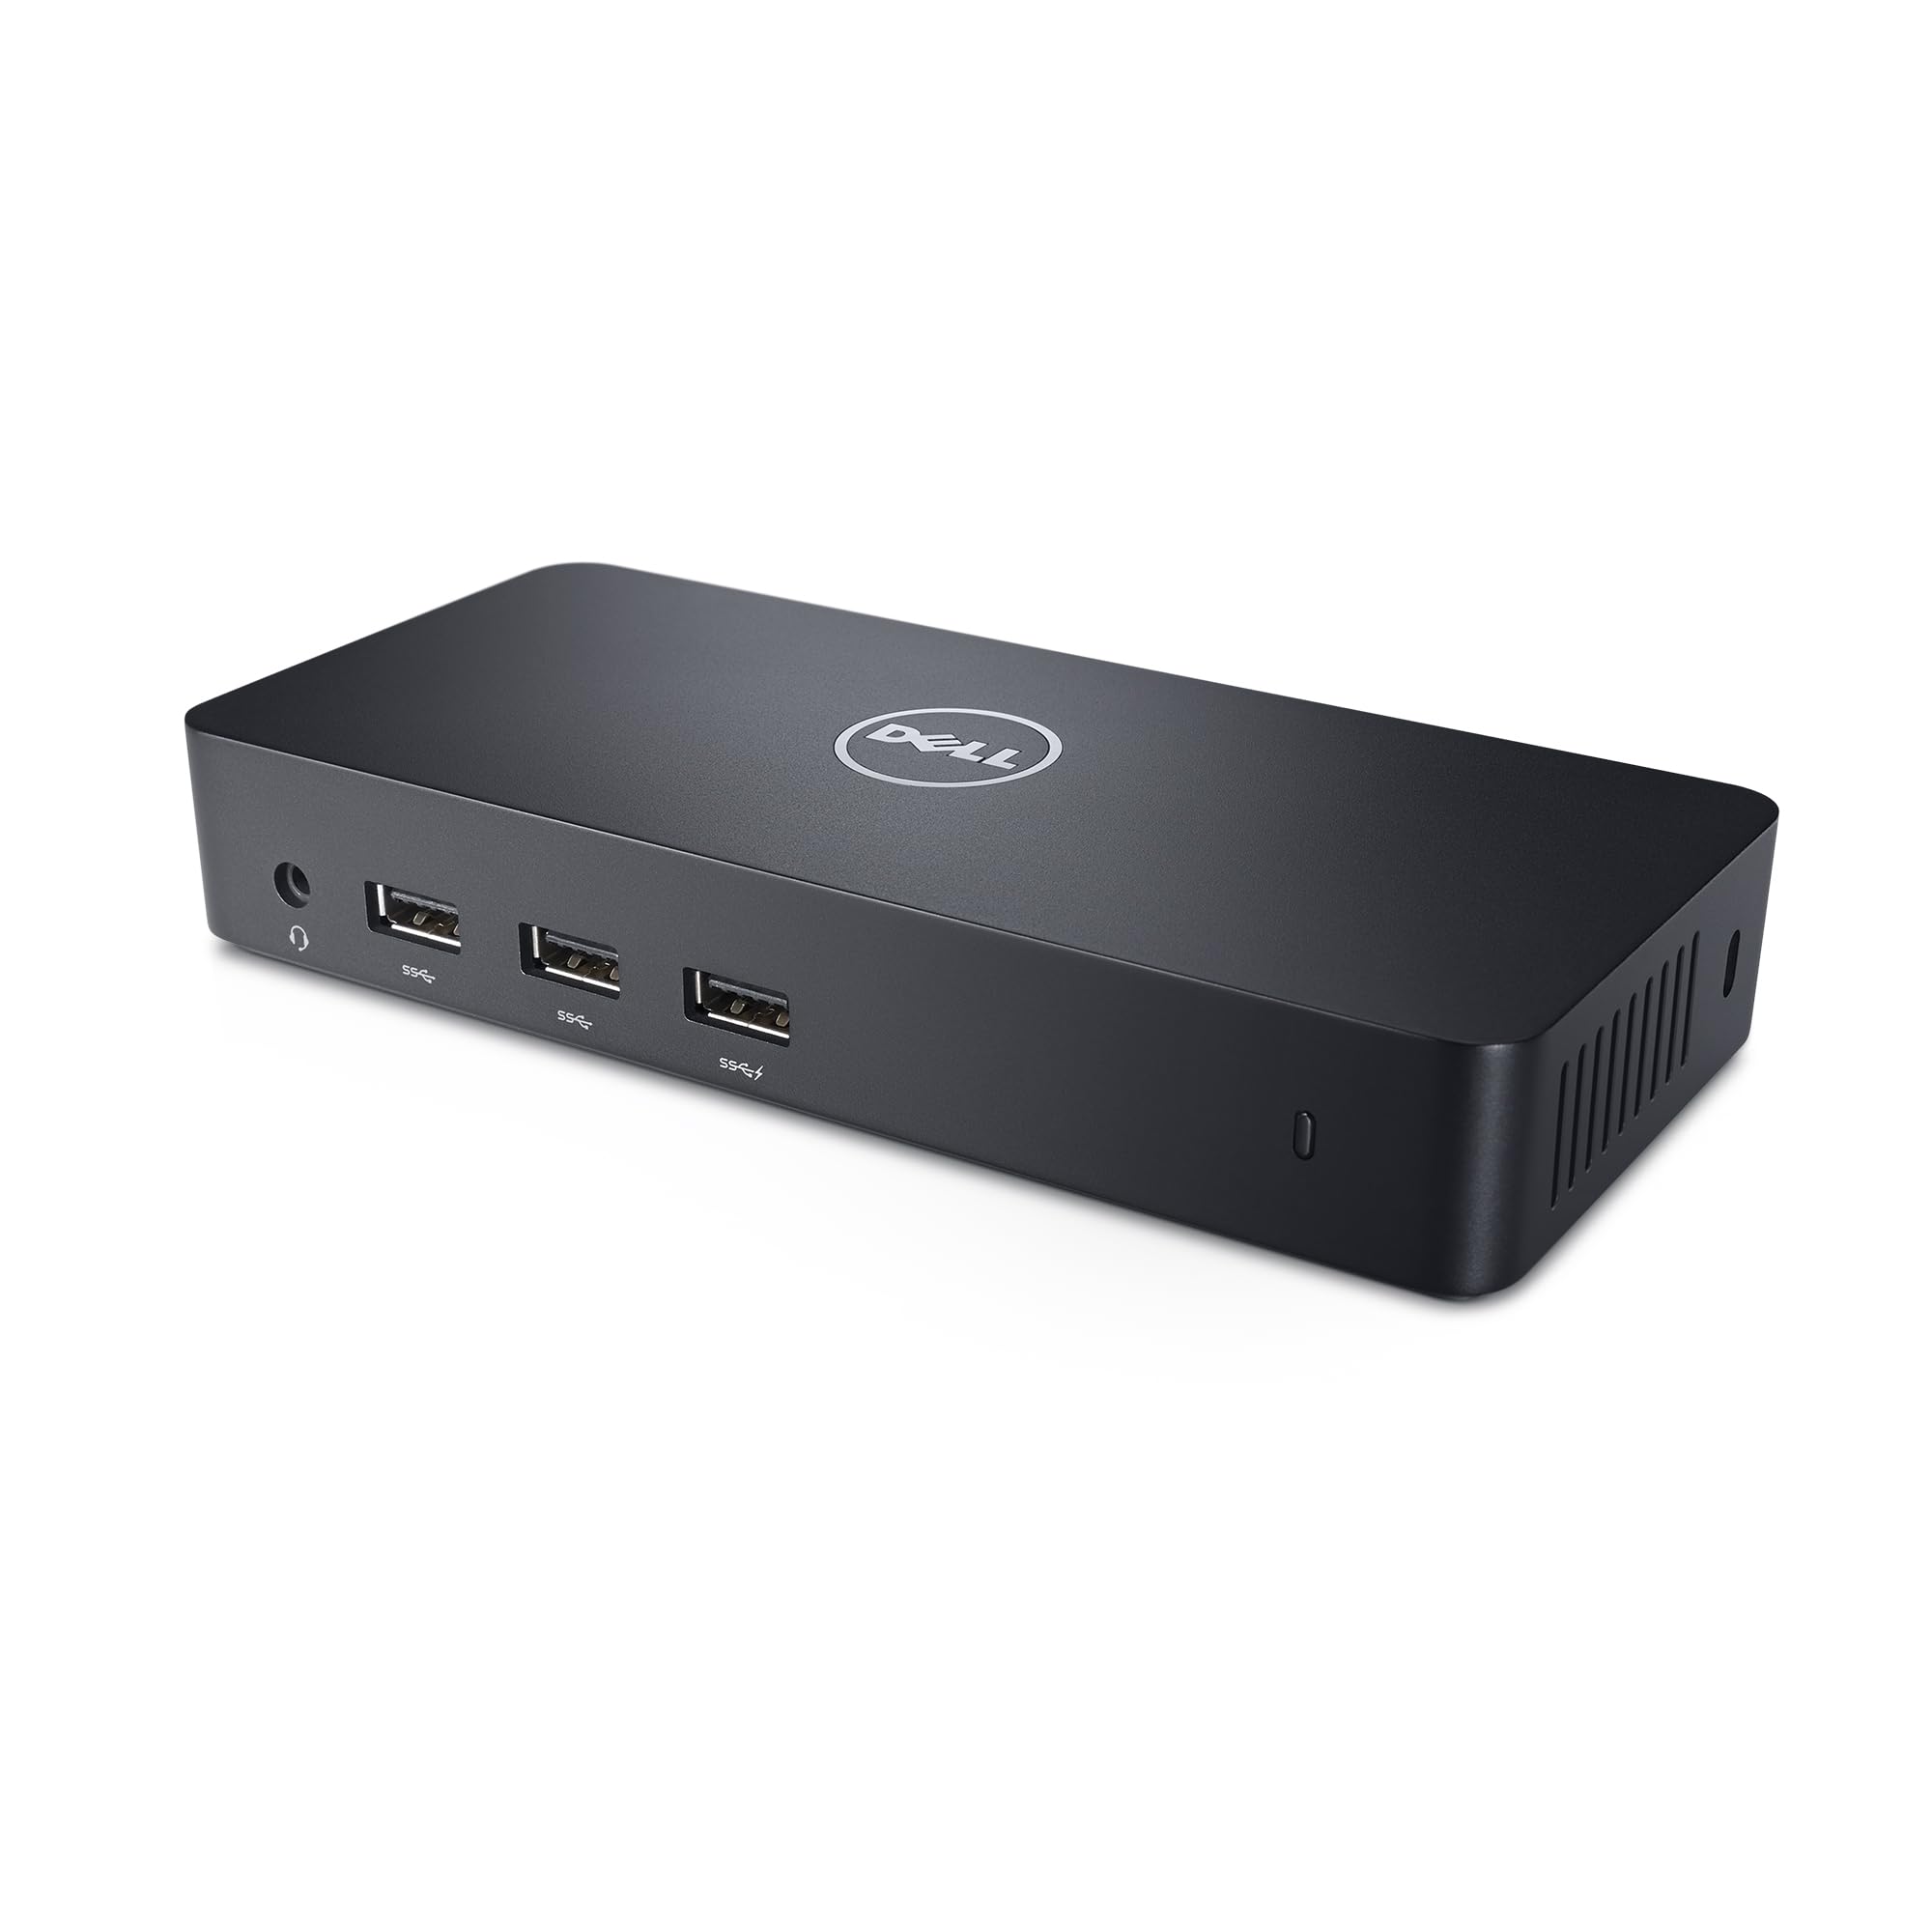 $85.78: Dell D3100 USB 3.0 Ultra HD/4K Triple Display Docking Station